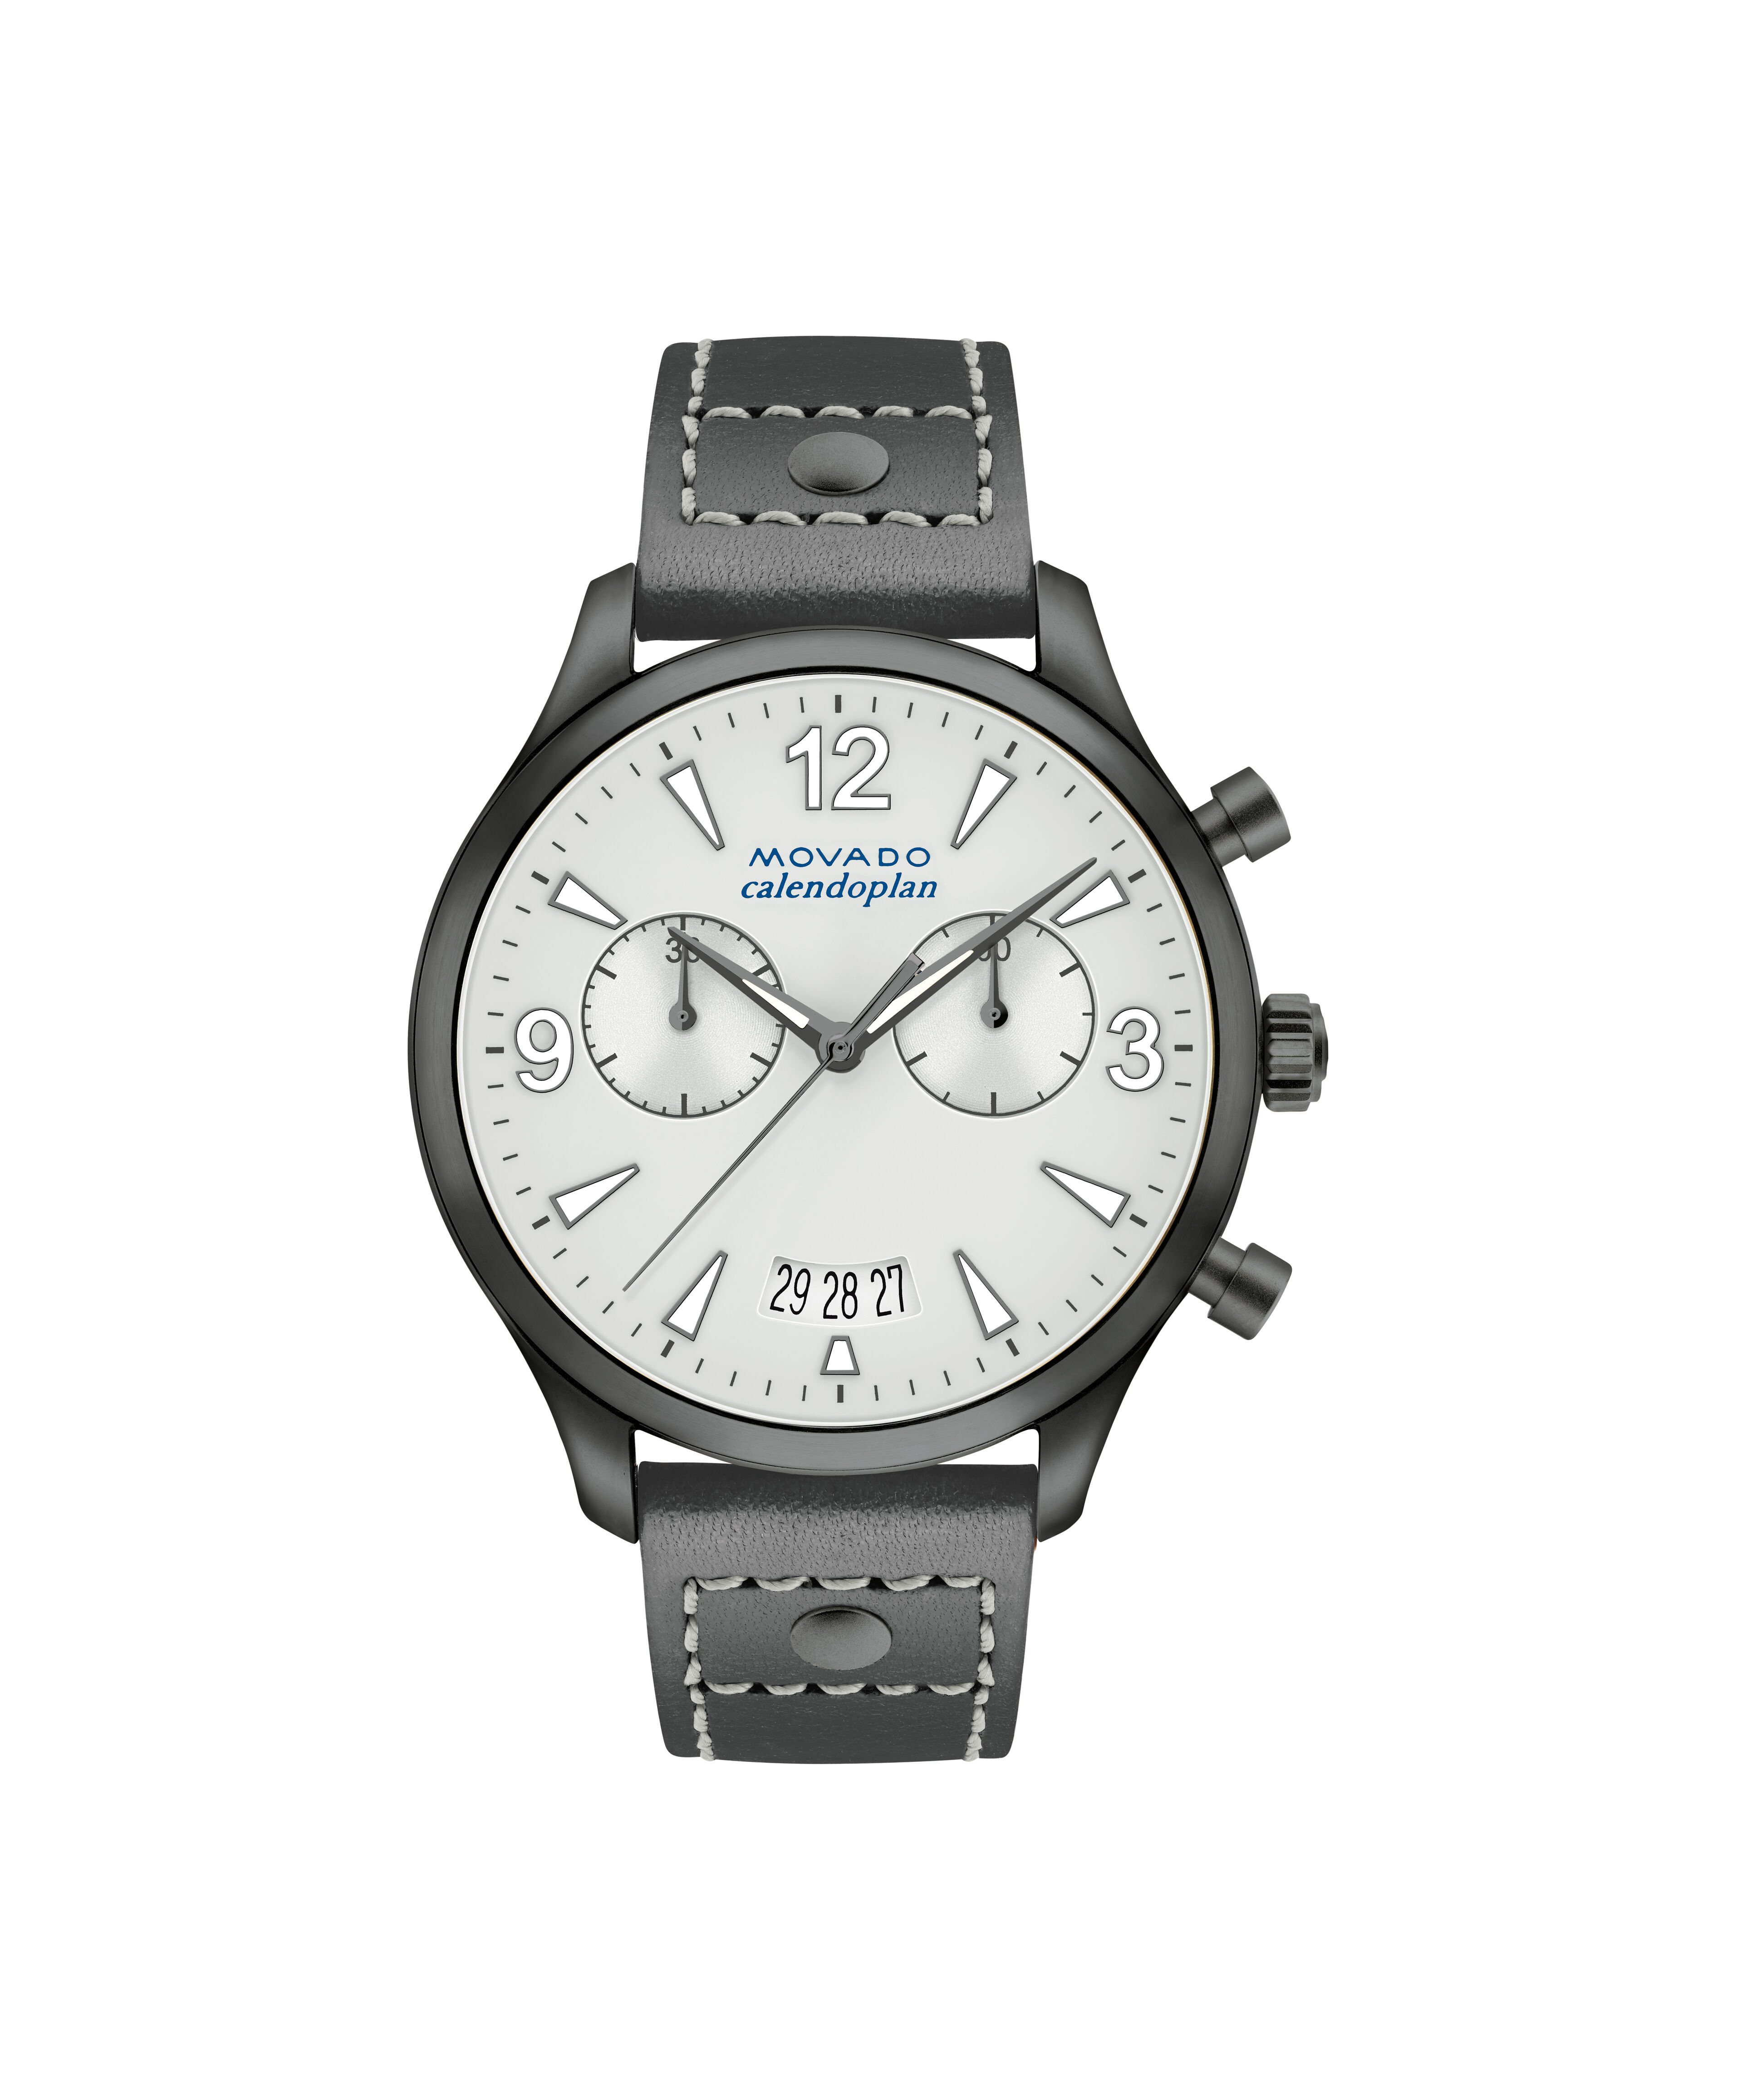 Fake Rolex 60600t Watch